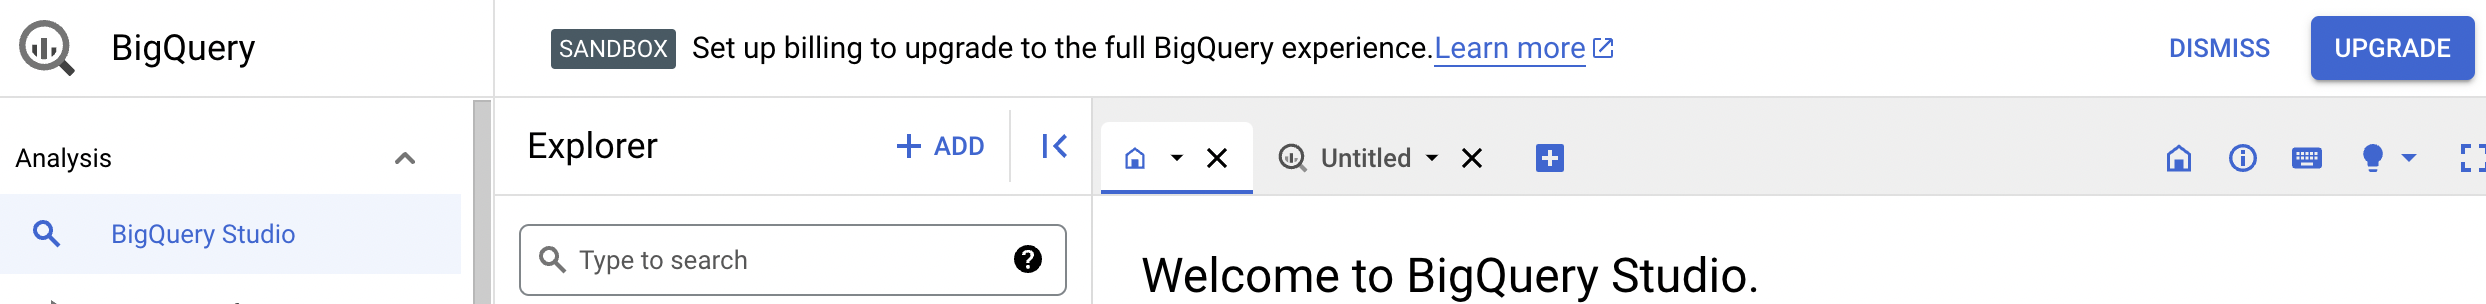 L'avis de confirmation offre la possibilité de passer à l'expérience BigQuery complète.